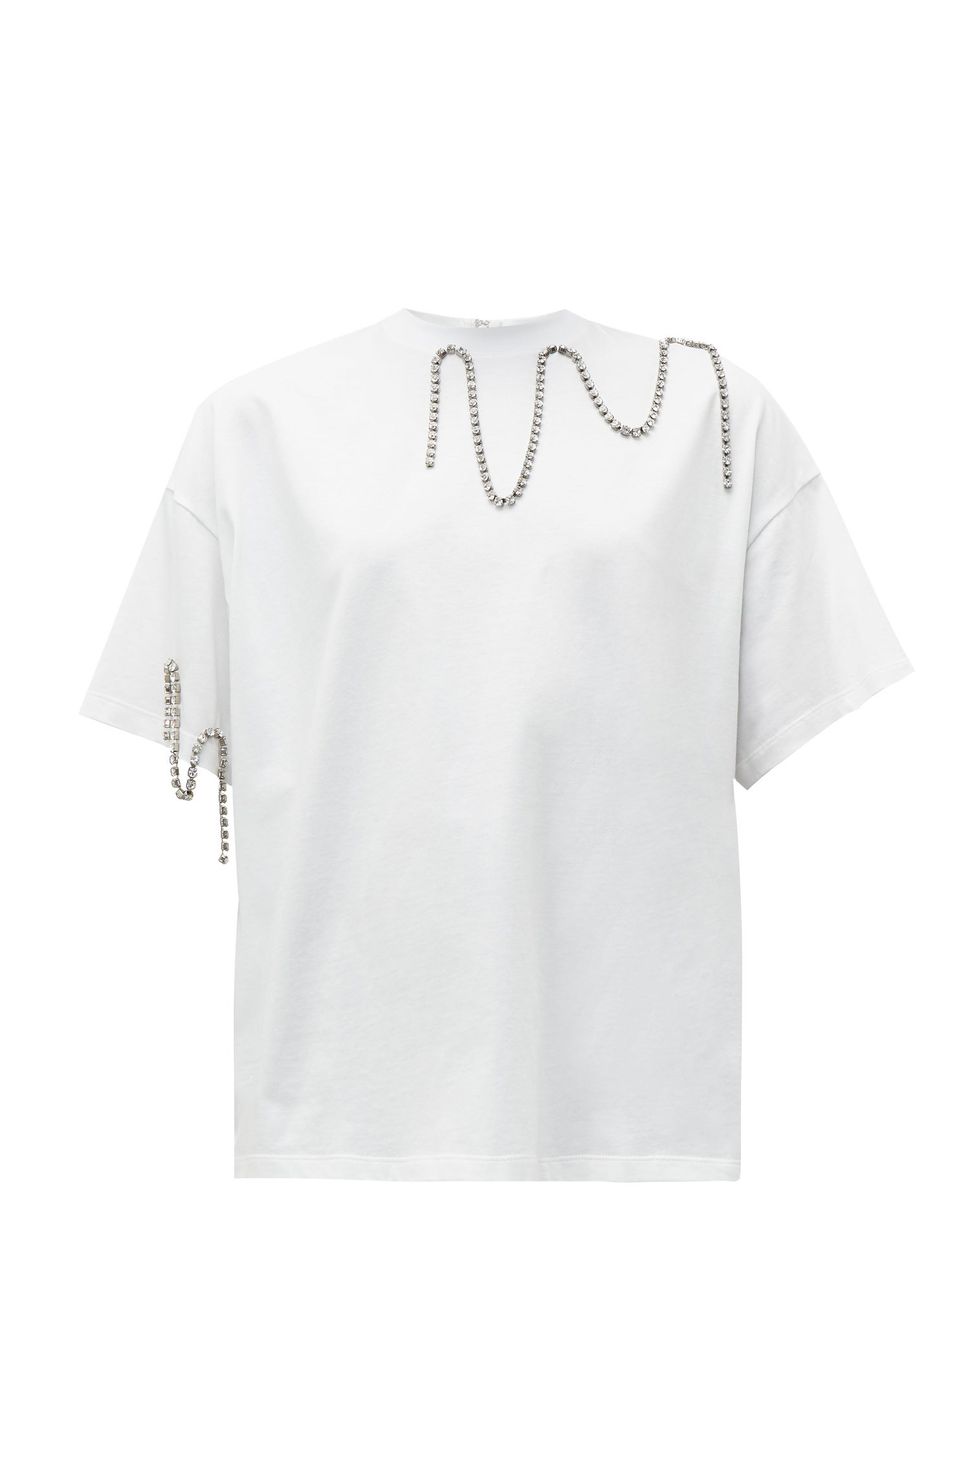 Best white t-shirt for women - christopher kane diamante